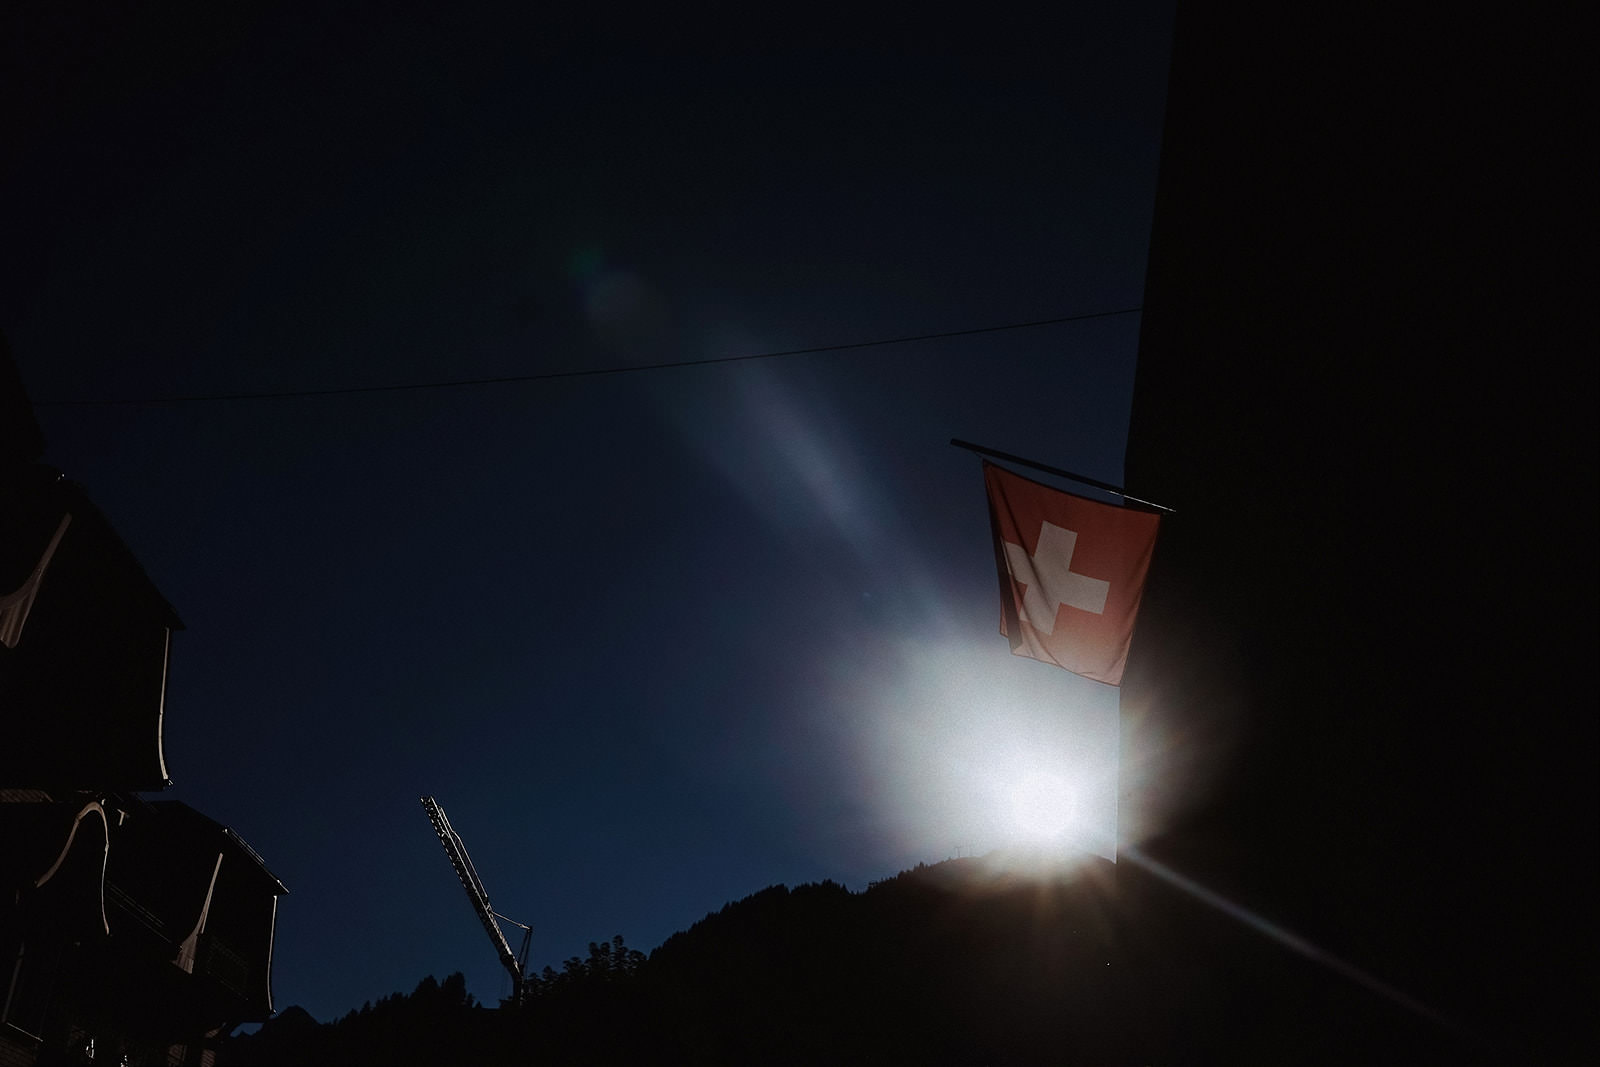 hochzeitsfotograf lauterbrunnen schweizer flagge